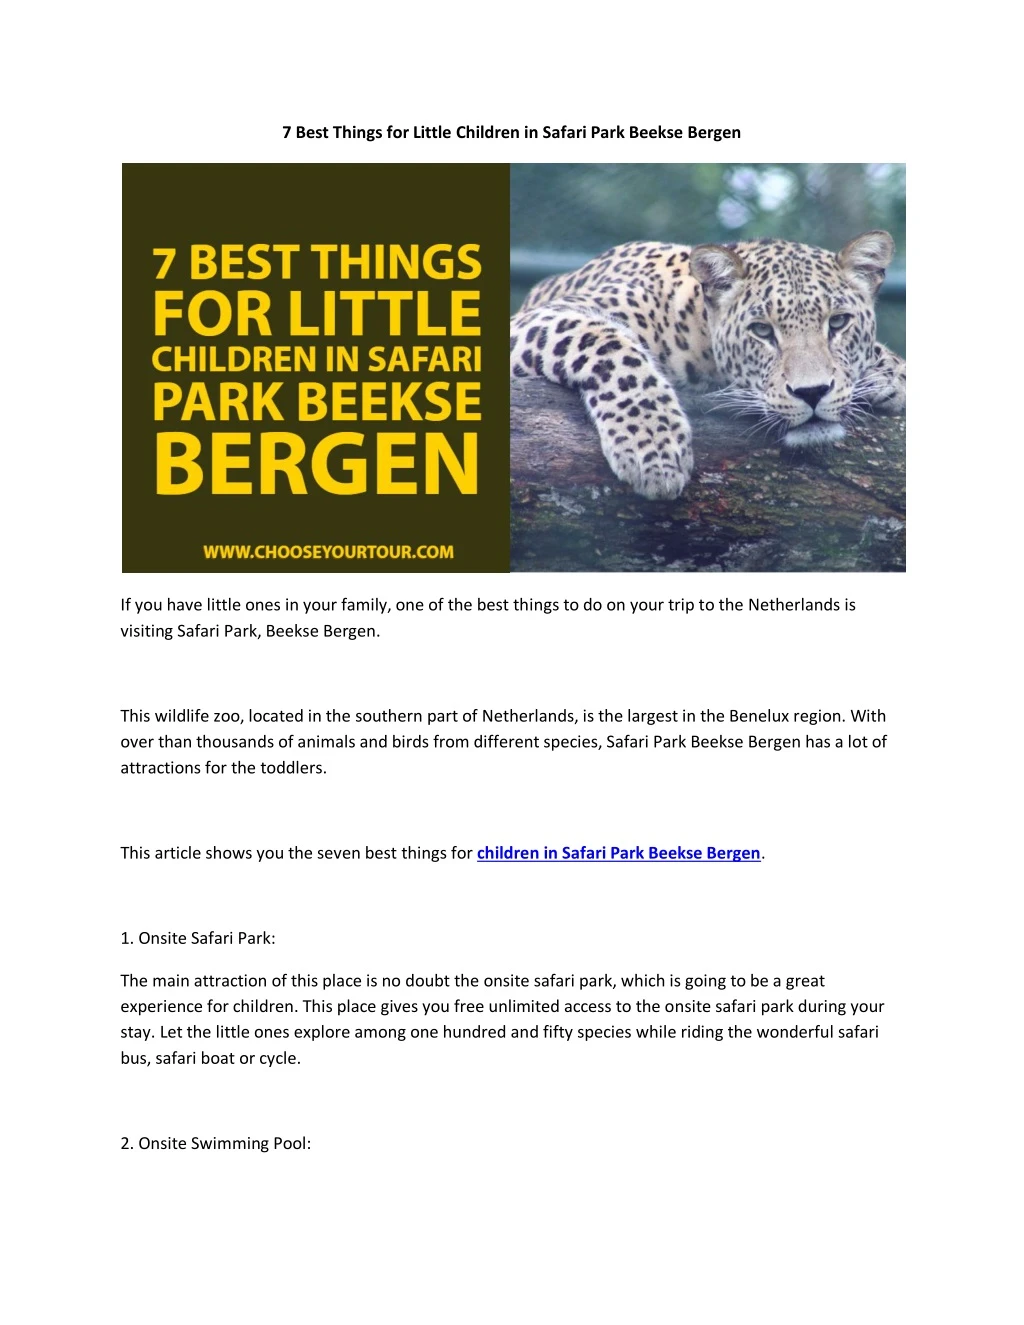 7 best things for little children in safari park